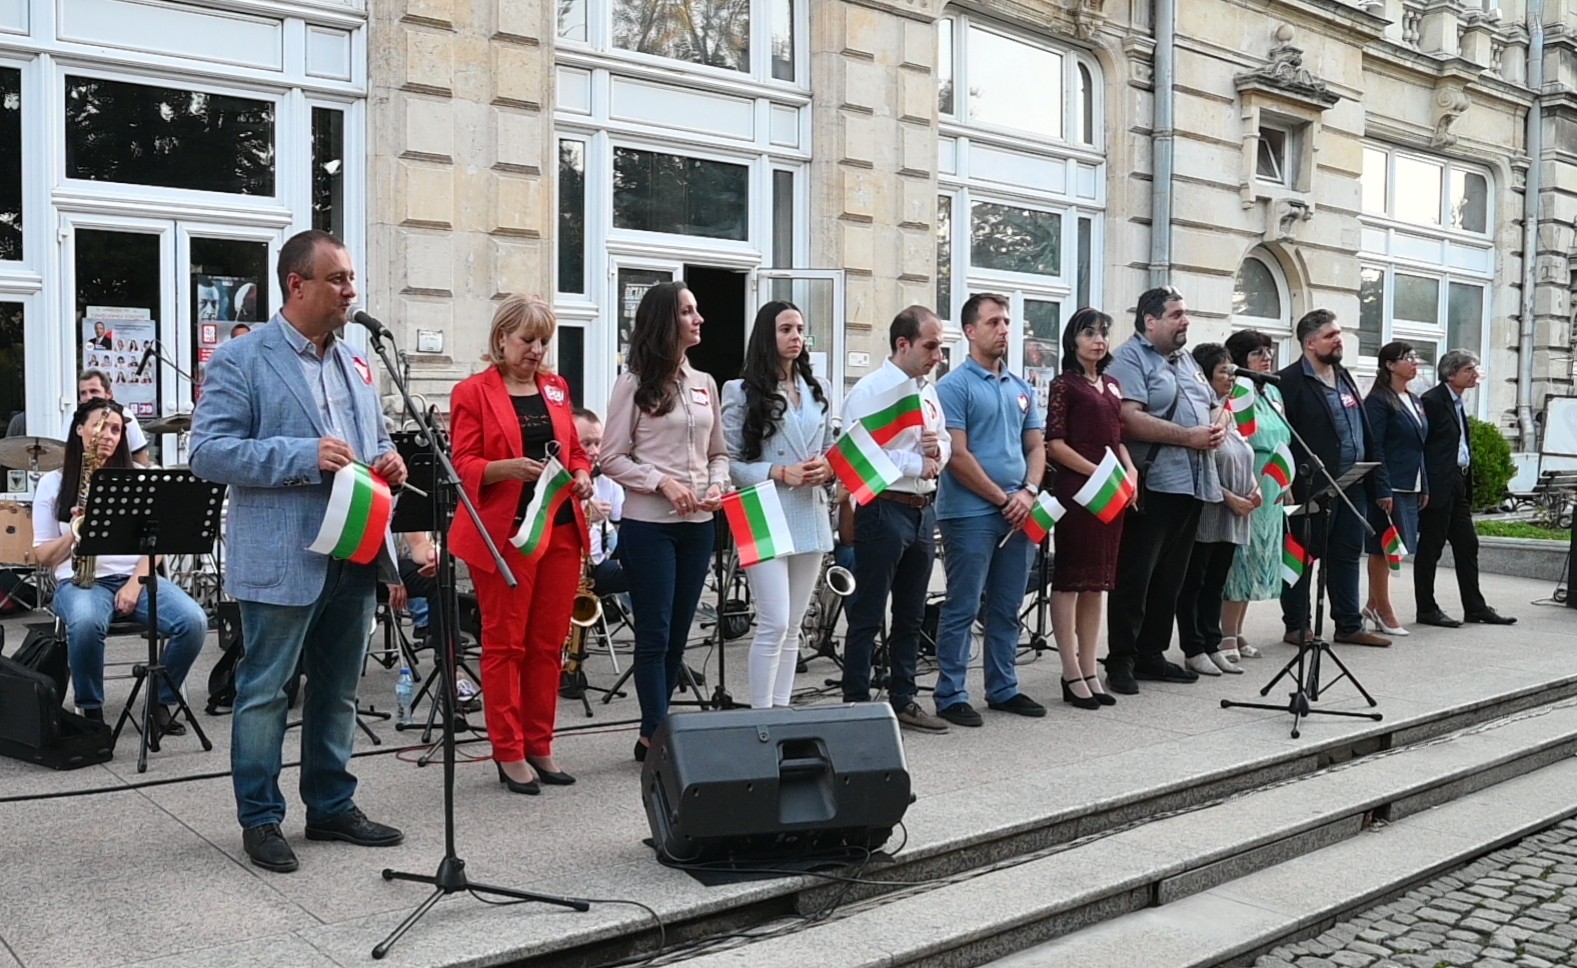  Българската социалистическа партия откри предизборната си кампания в Русе с послание за социална и сигурна държава